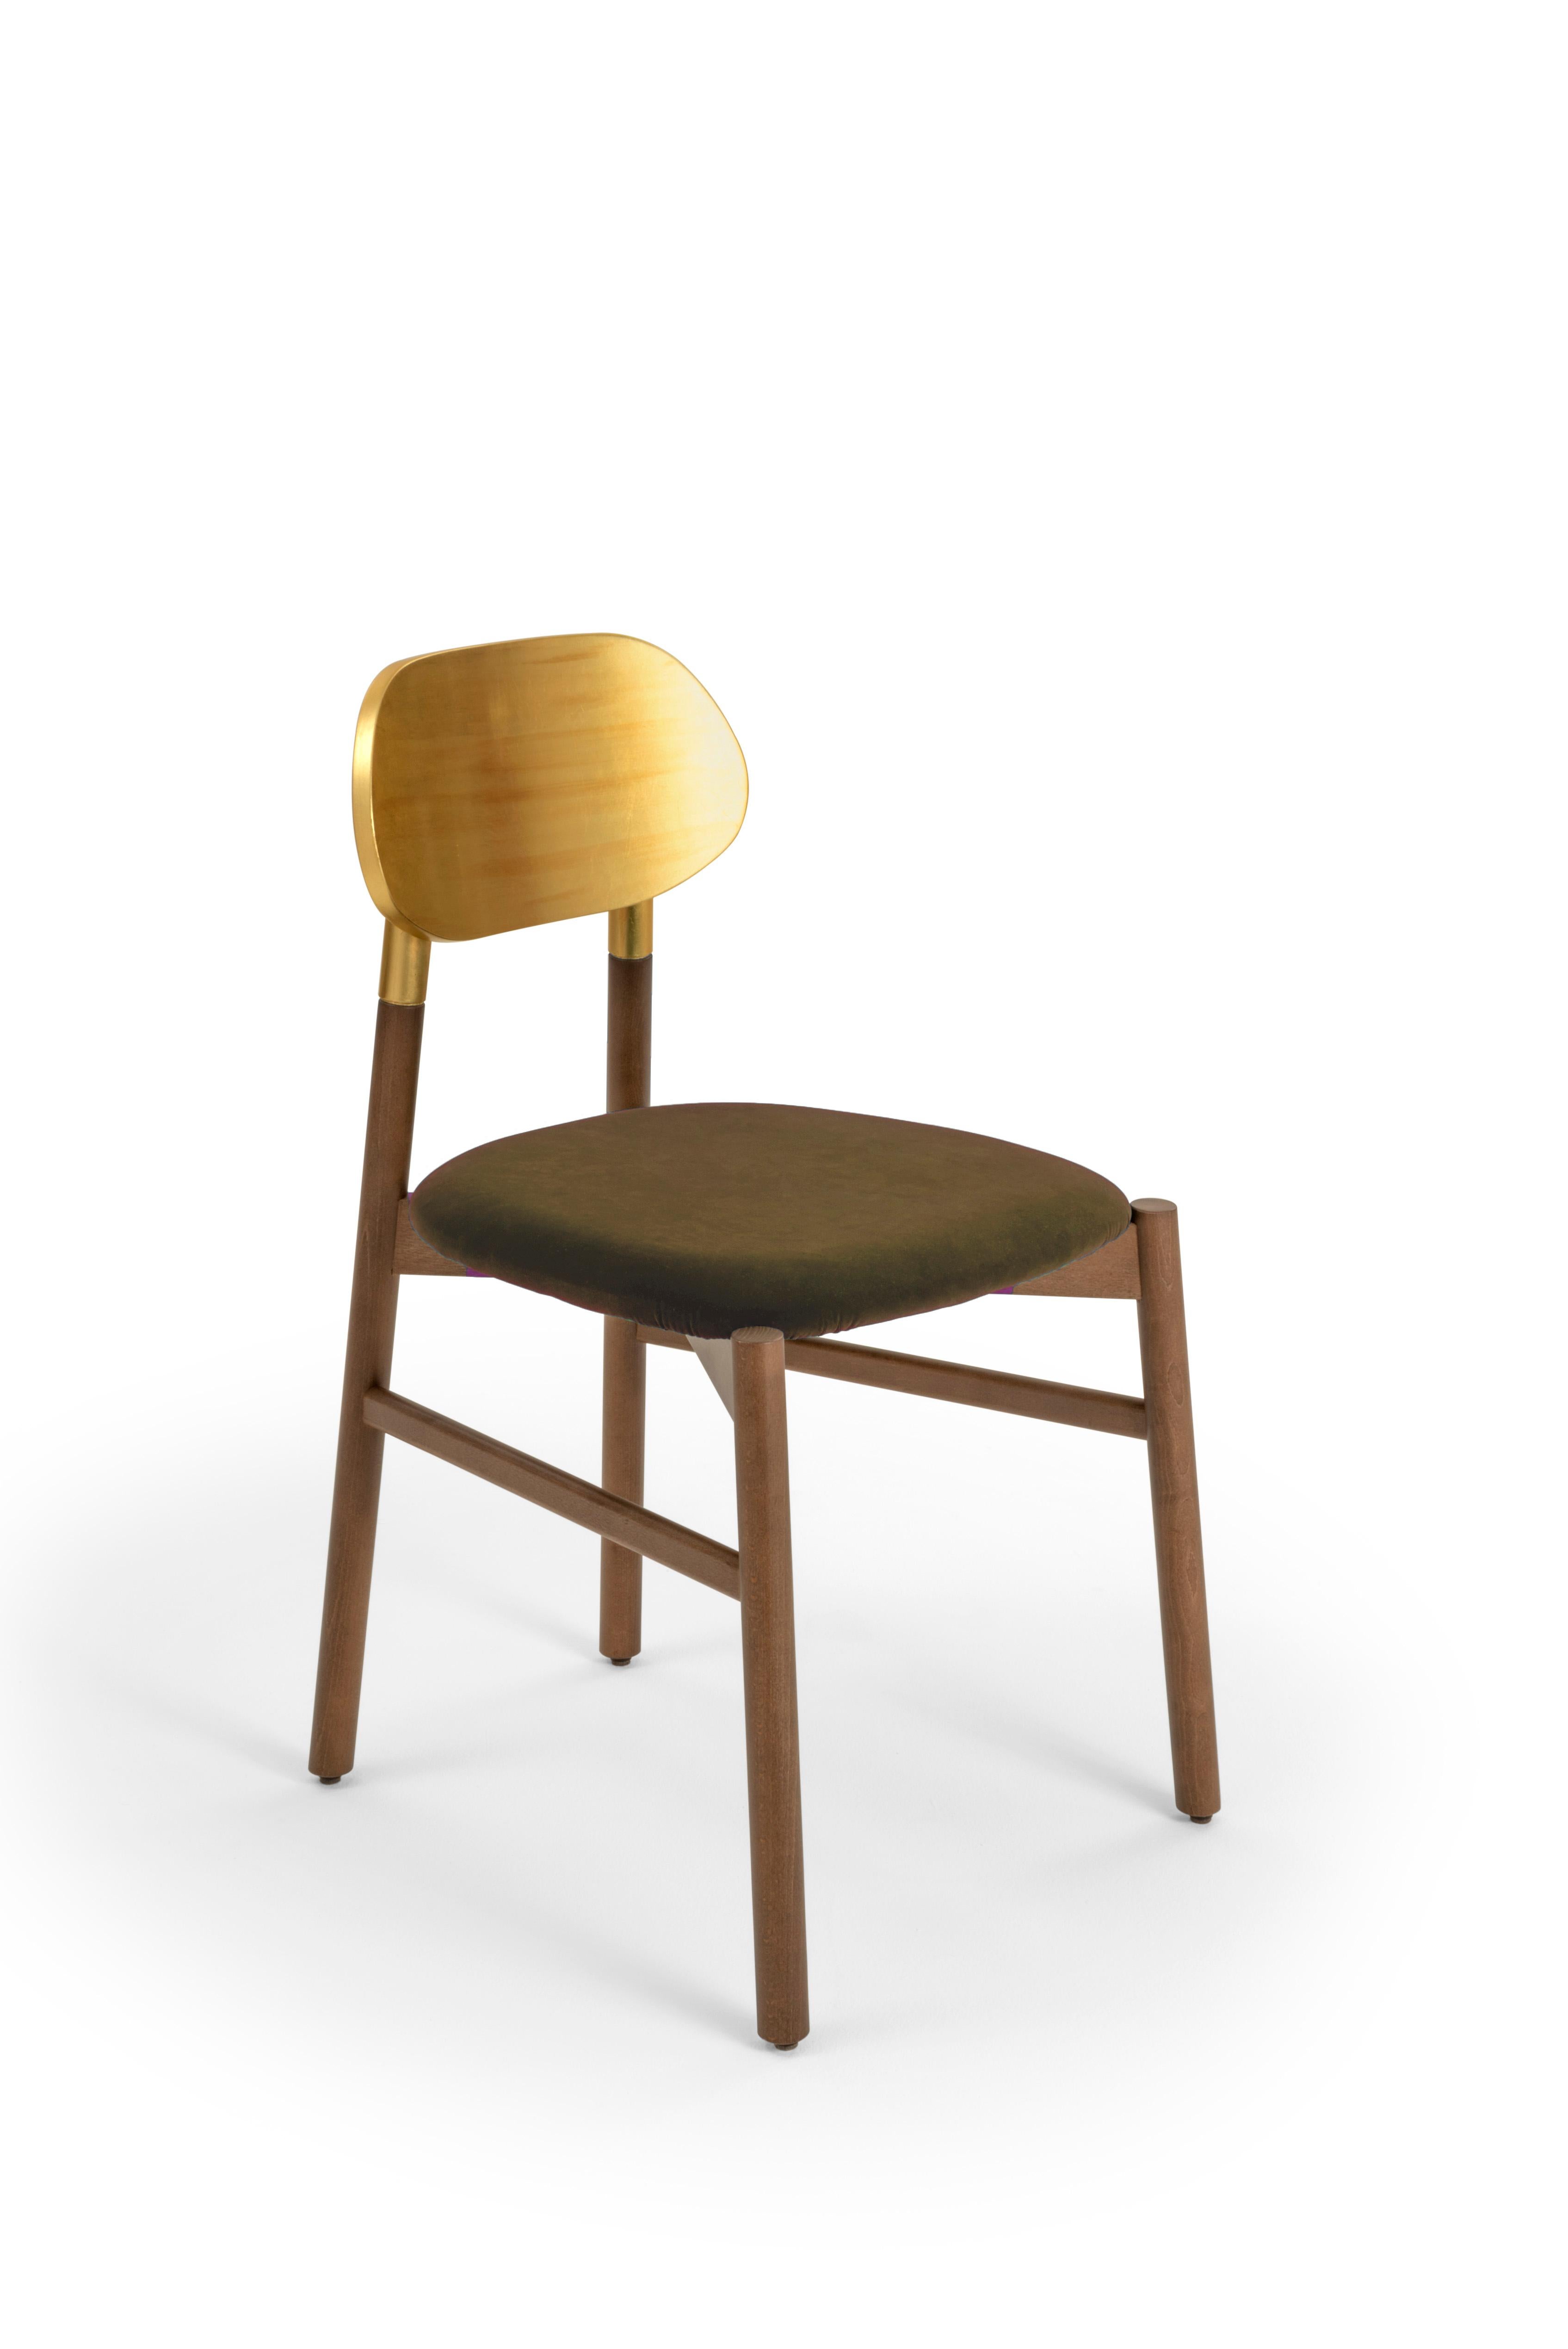 Gepolsterter Stuhl Bokken aus nussbaumfarben gebeiztem Buchenholz, Rückenlehne mit Blattgold und gepolstertem Sitz, bezogen mit hochwertigem Rubelli-Samt. Reine italienische Qualität.
Ein essentieller Stuhl in der Form, aber kostbar in den Farben.